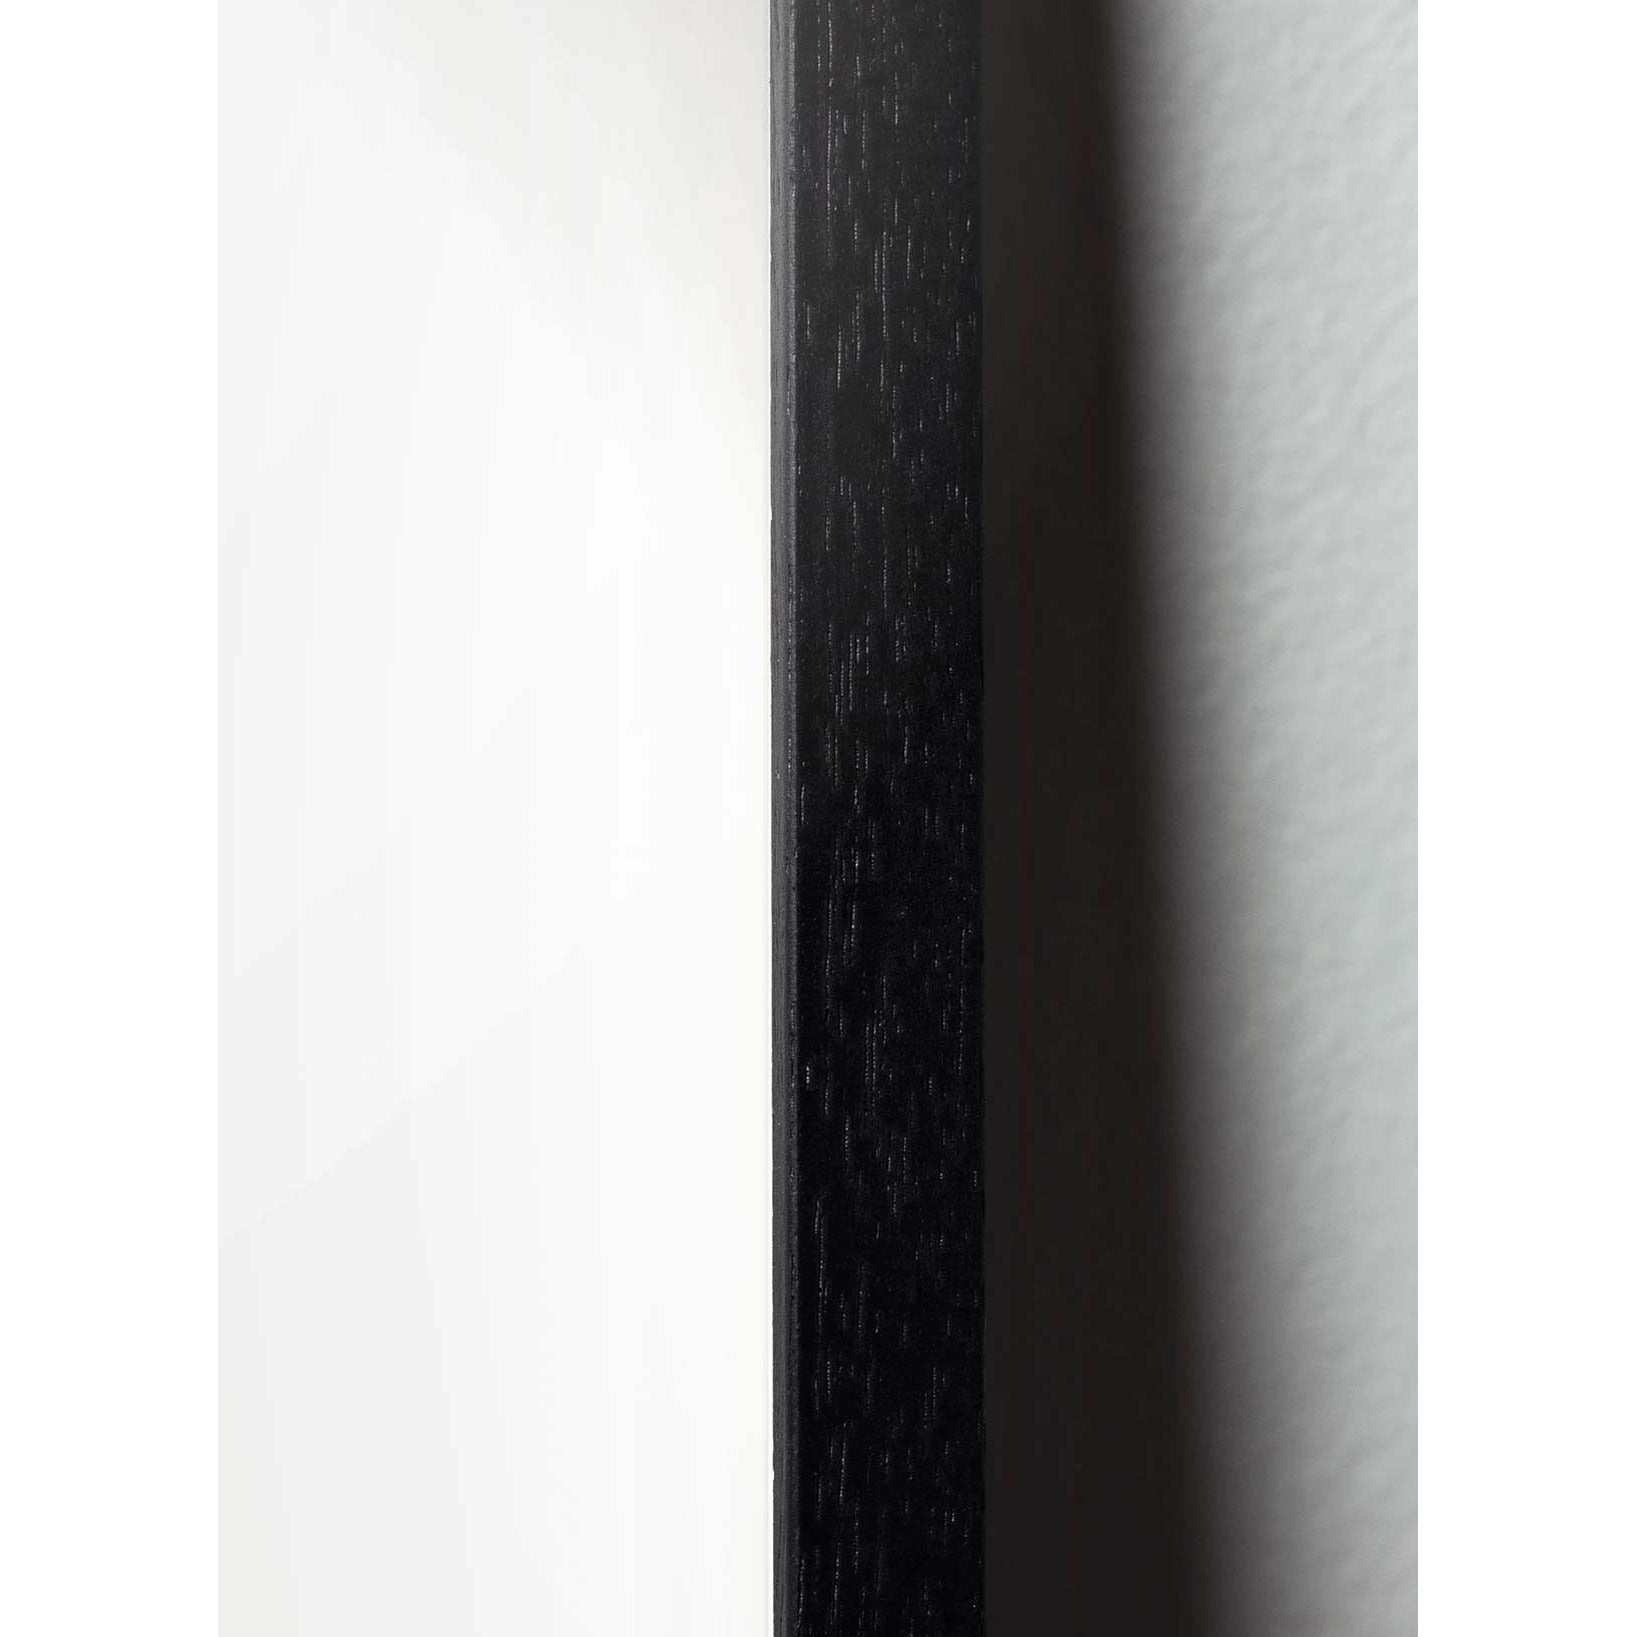 Póster de línea de hormigas de creación, marco en madera lacada negra 50x70 cm, fondo blanco